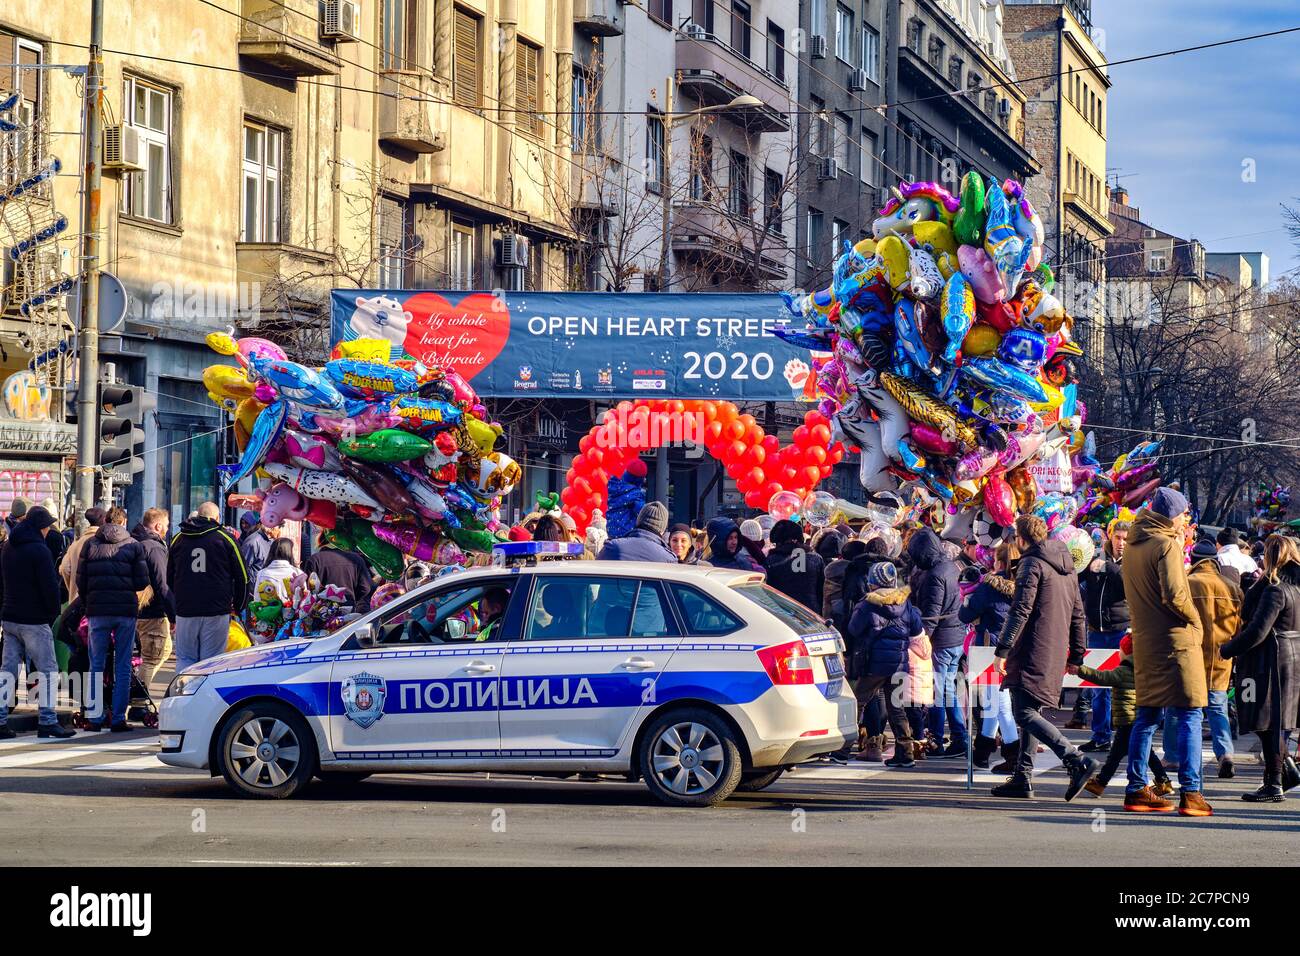 Belgrad / Serbien - 1. Januar 2020: Open Heart Street, eine jährliche Veranstaltung, die traditionell am Neujahrstag, 1. Januar, in Belgrad, Serbien, stattfindet Stockfoto